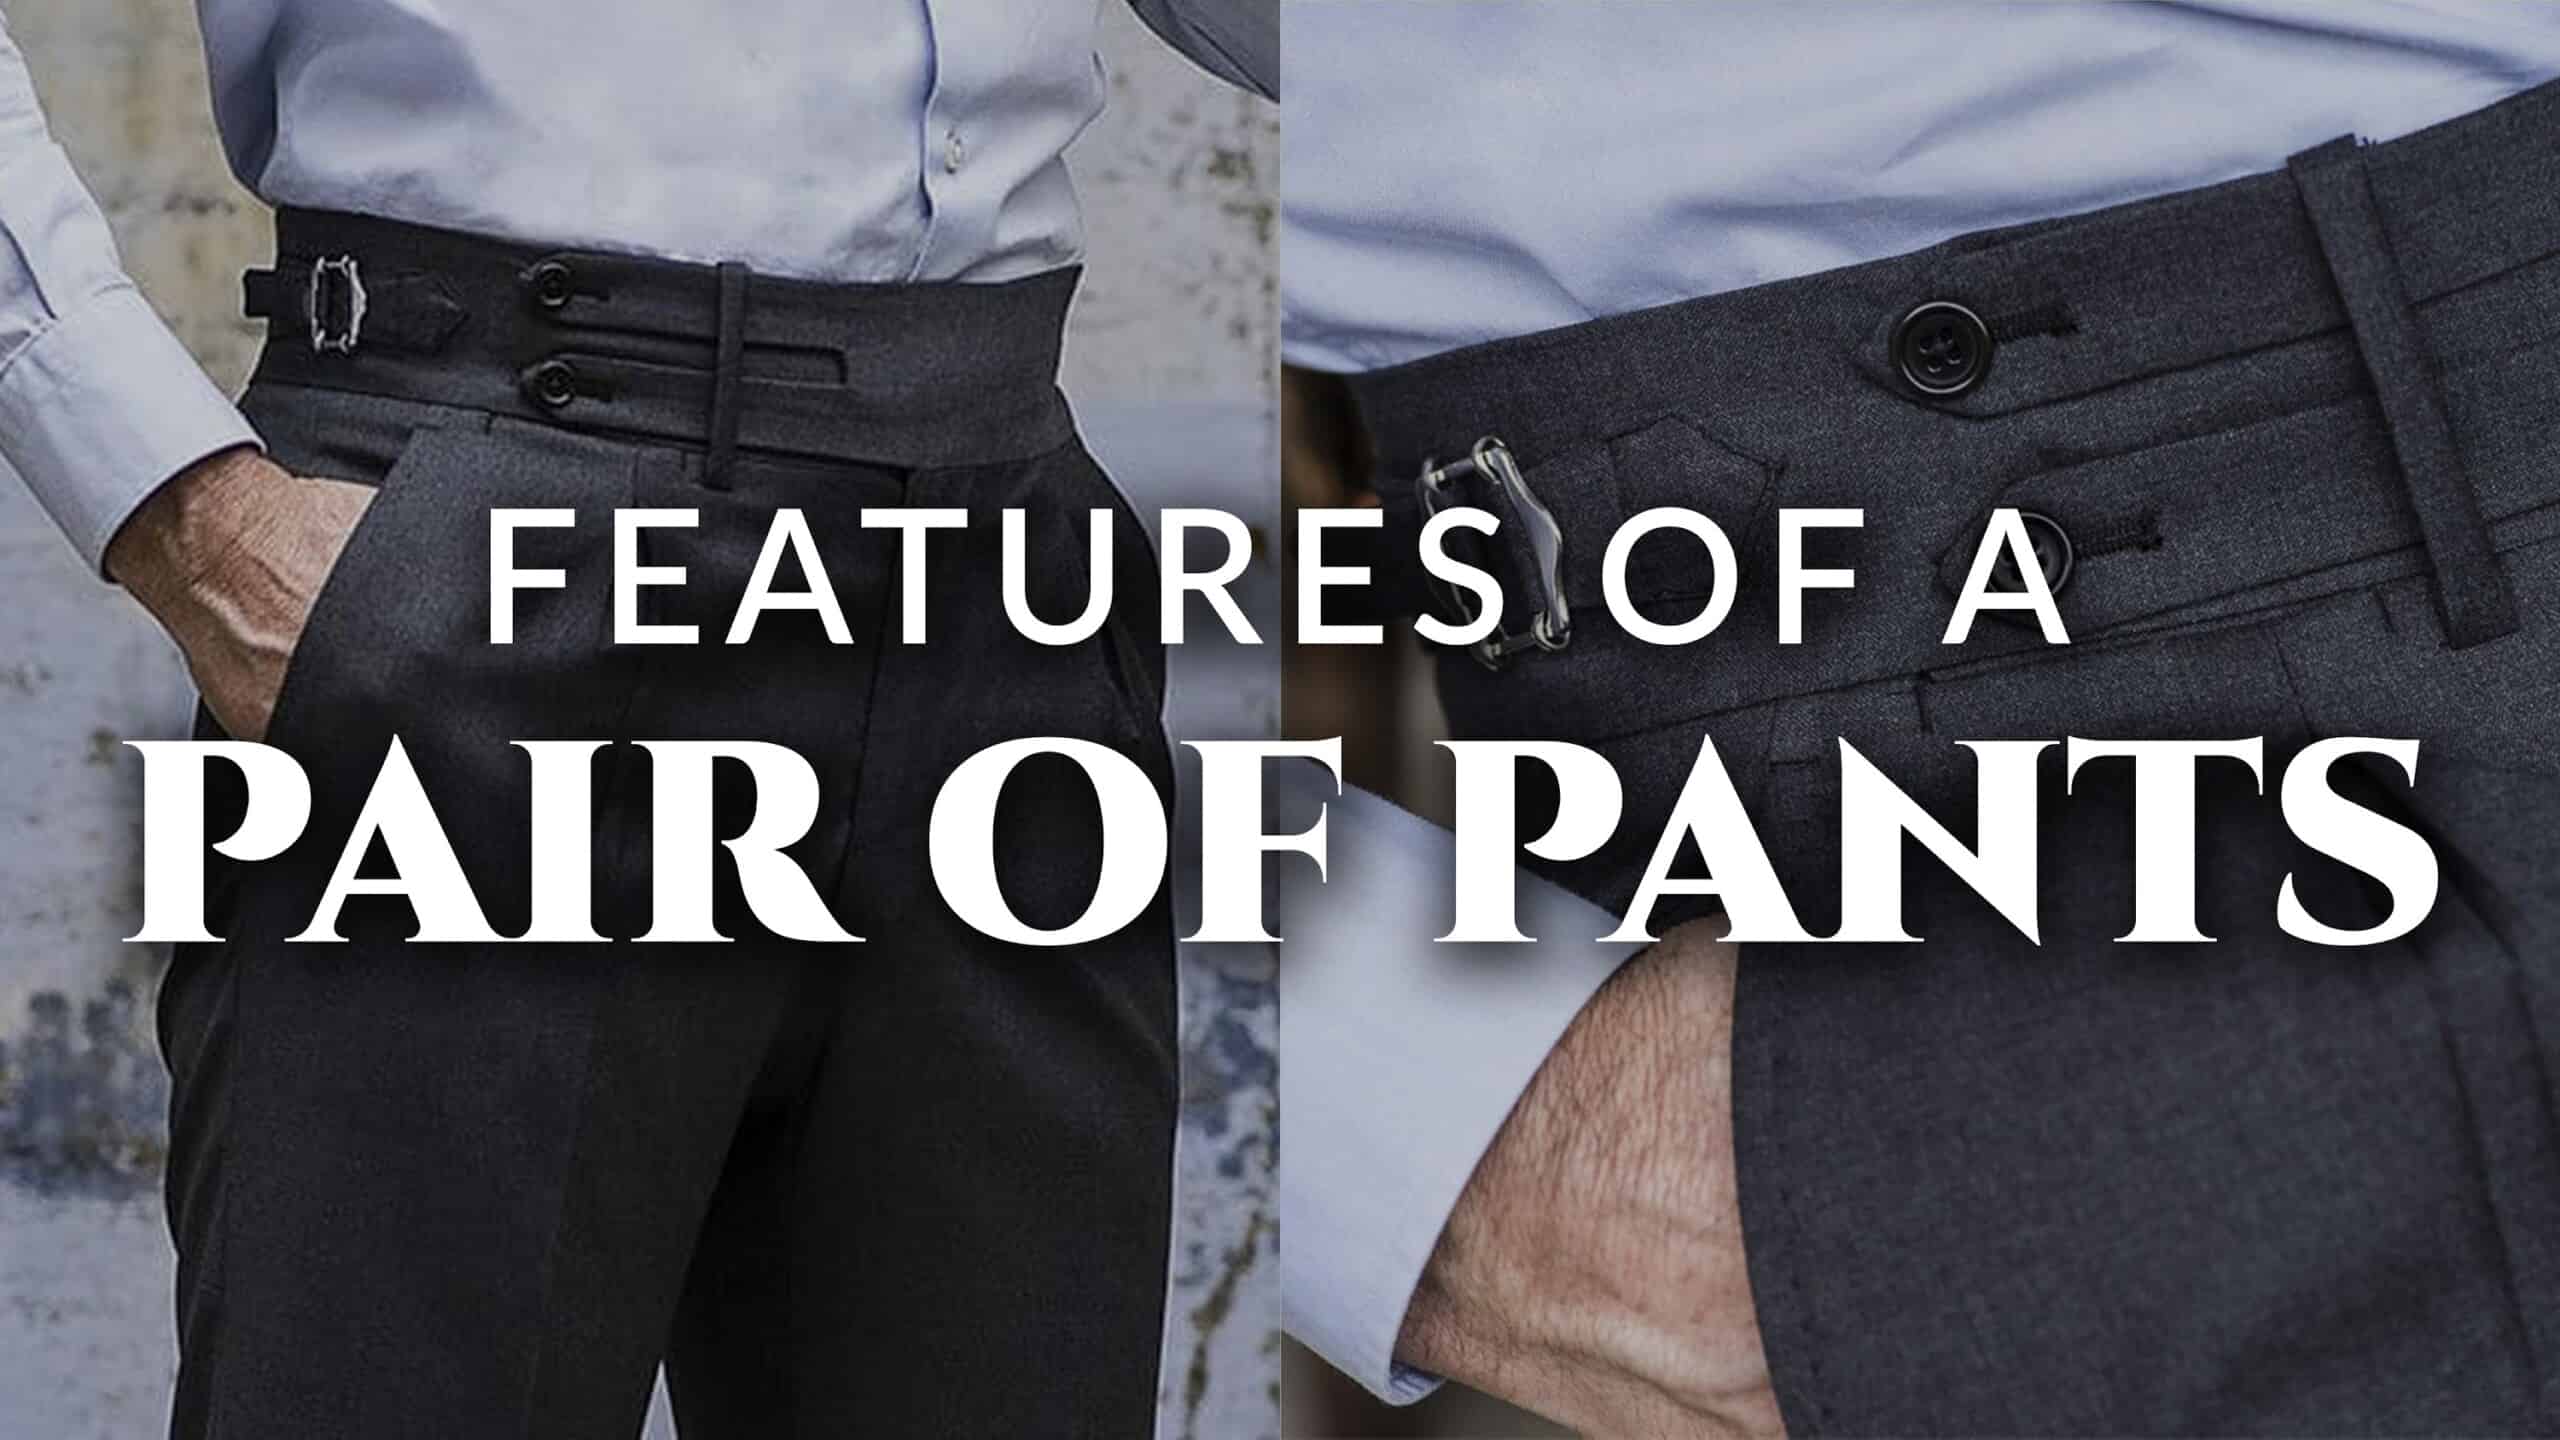 Comfy Clothiers 6 Pants Button Extenders for Pants Khakis and Dress Slacks Waist Comfort 